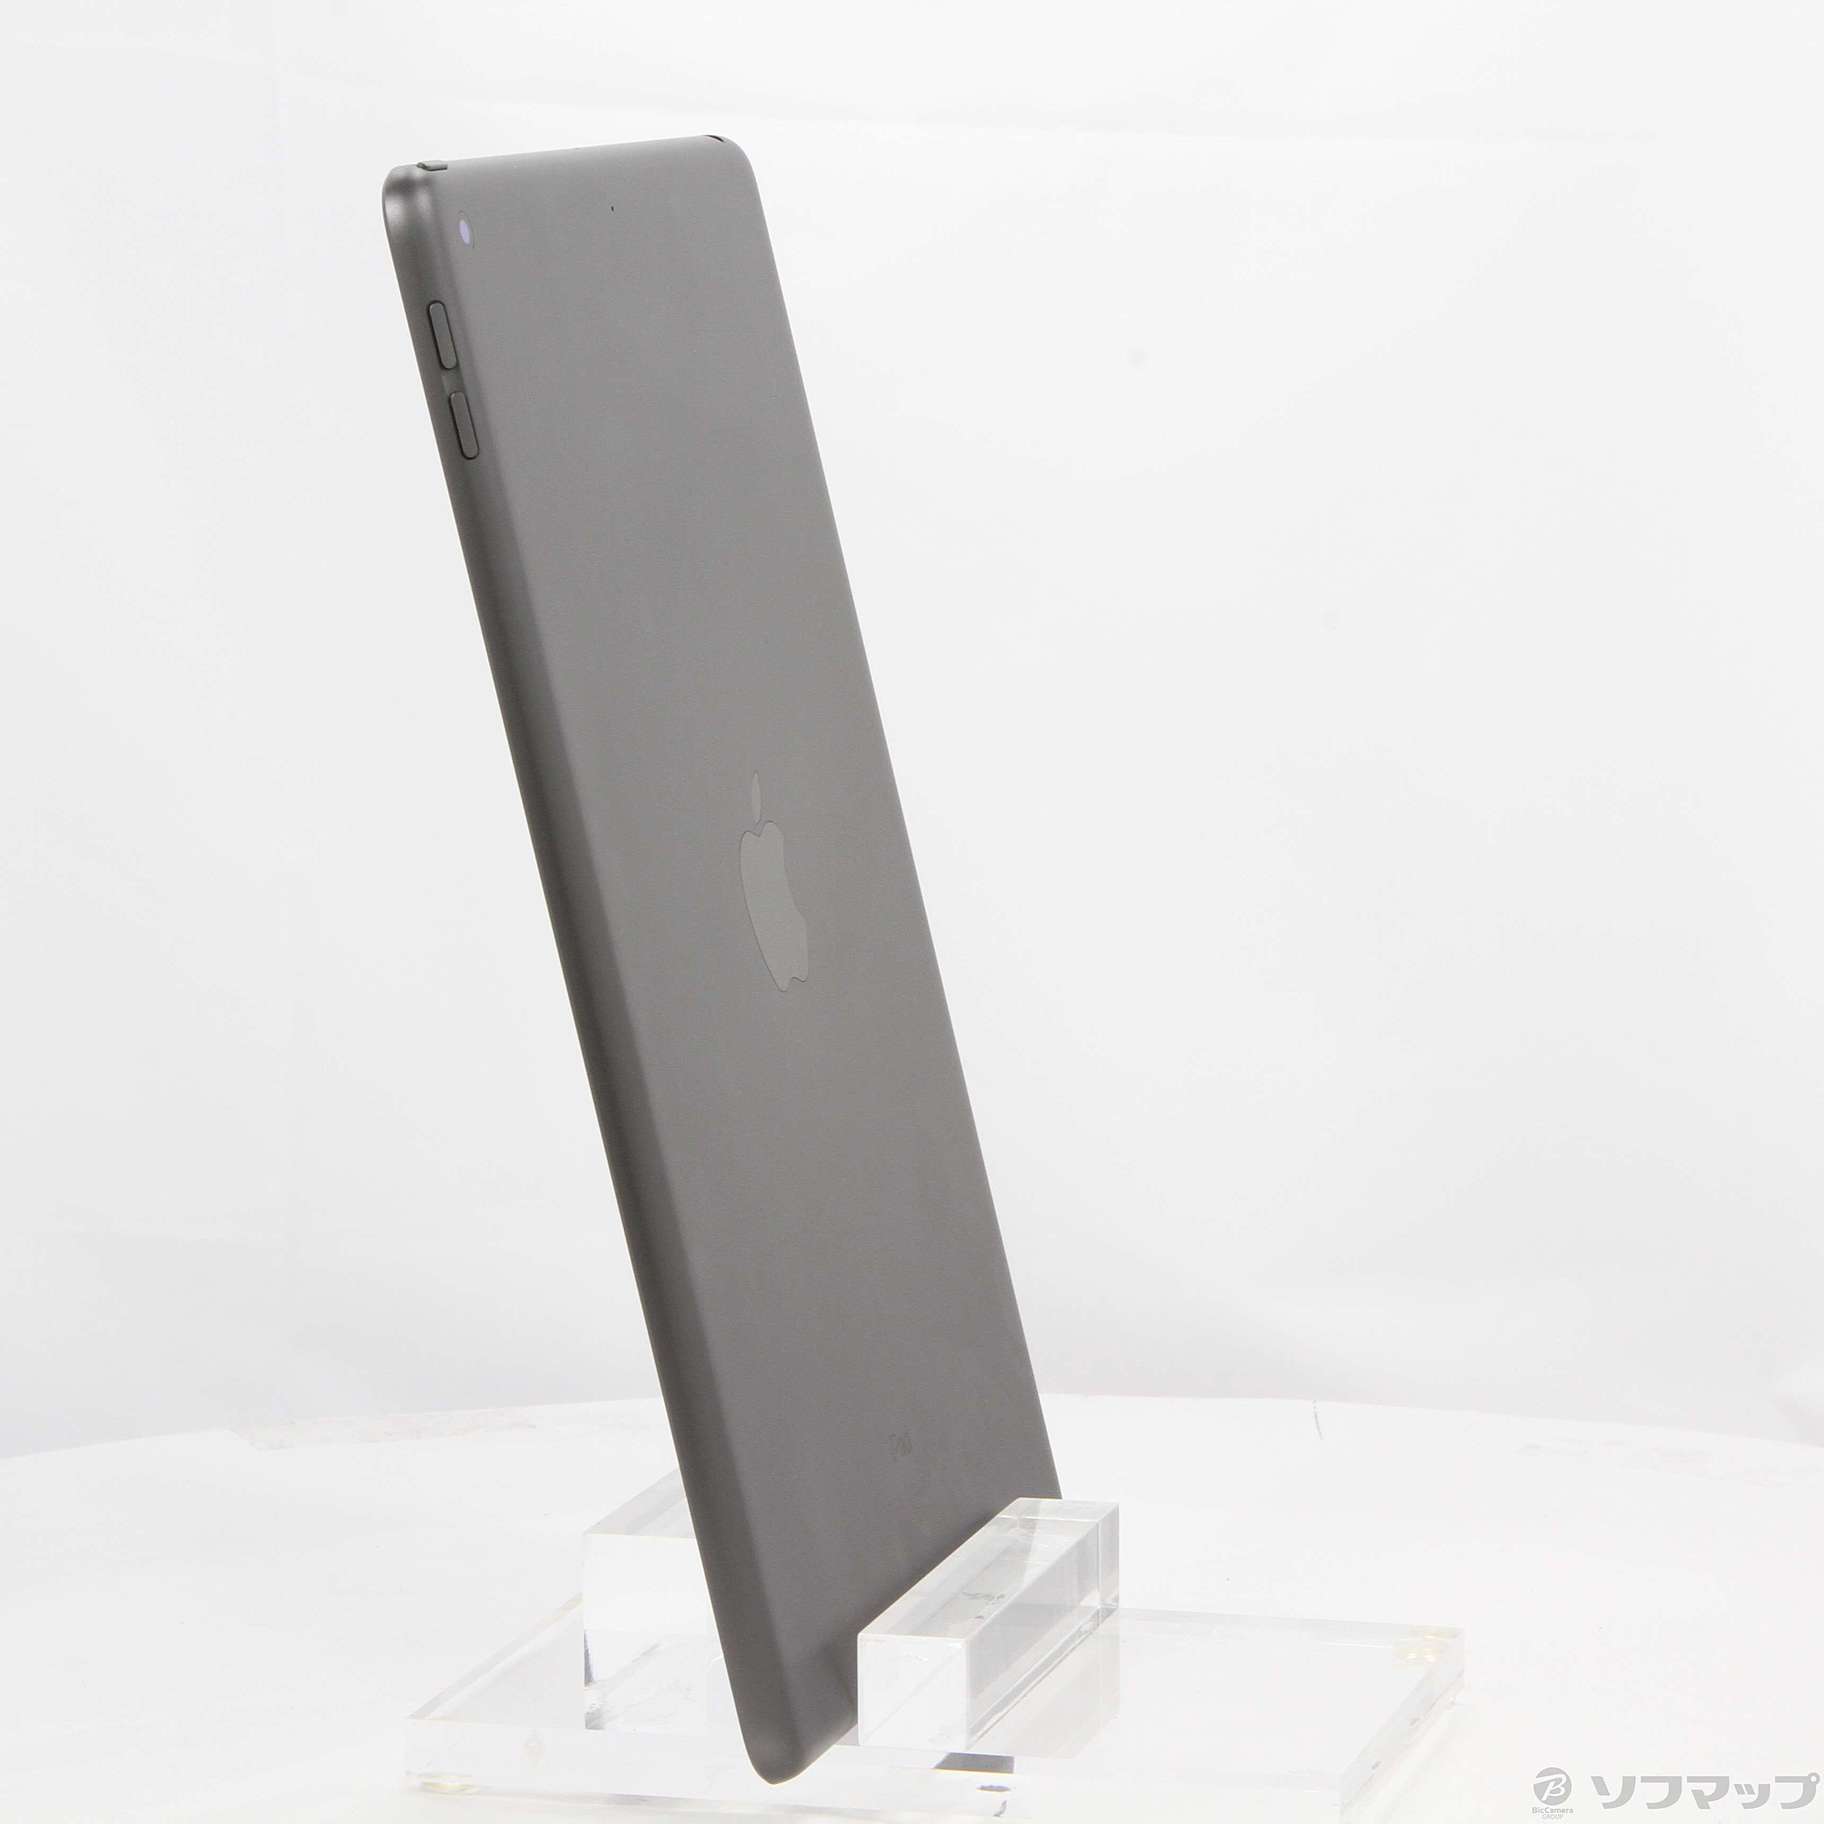 【新品未開封】iPad 第7世代 スペースグレー 32GB MW742J/A